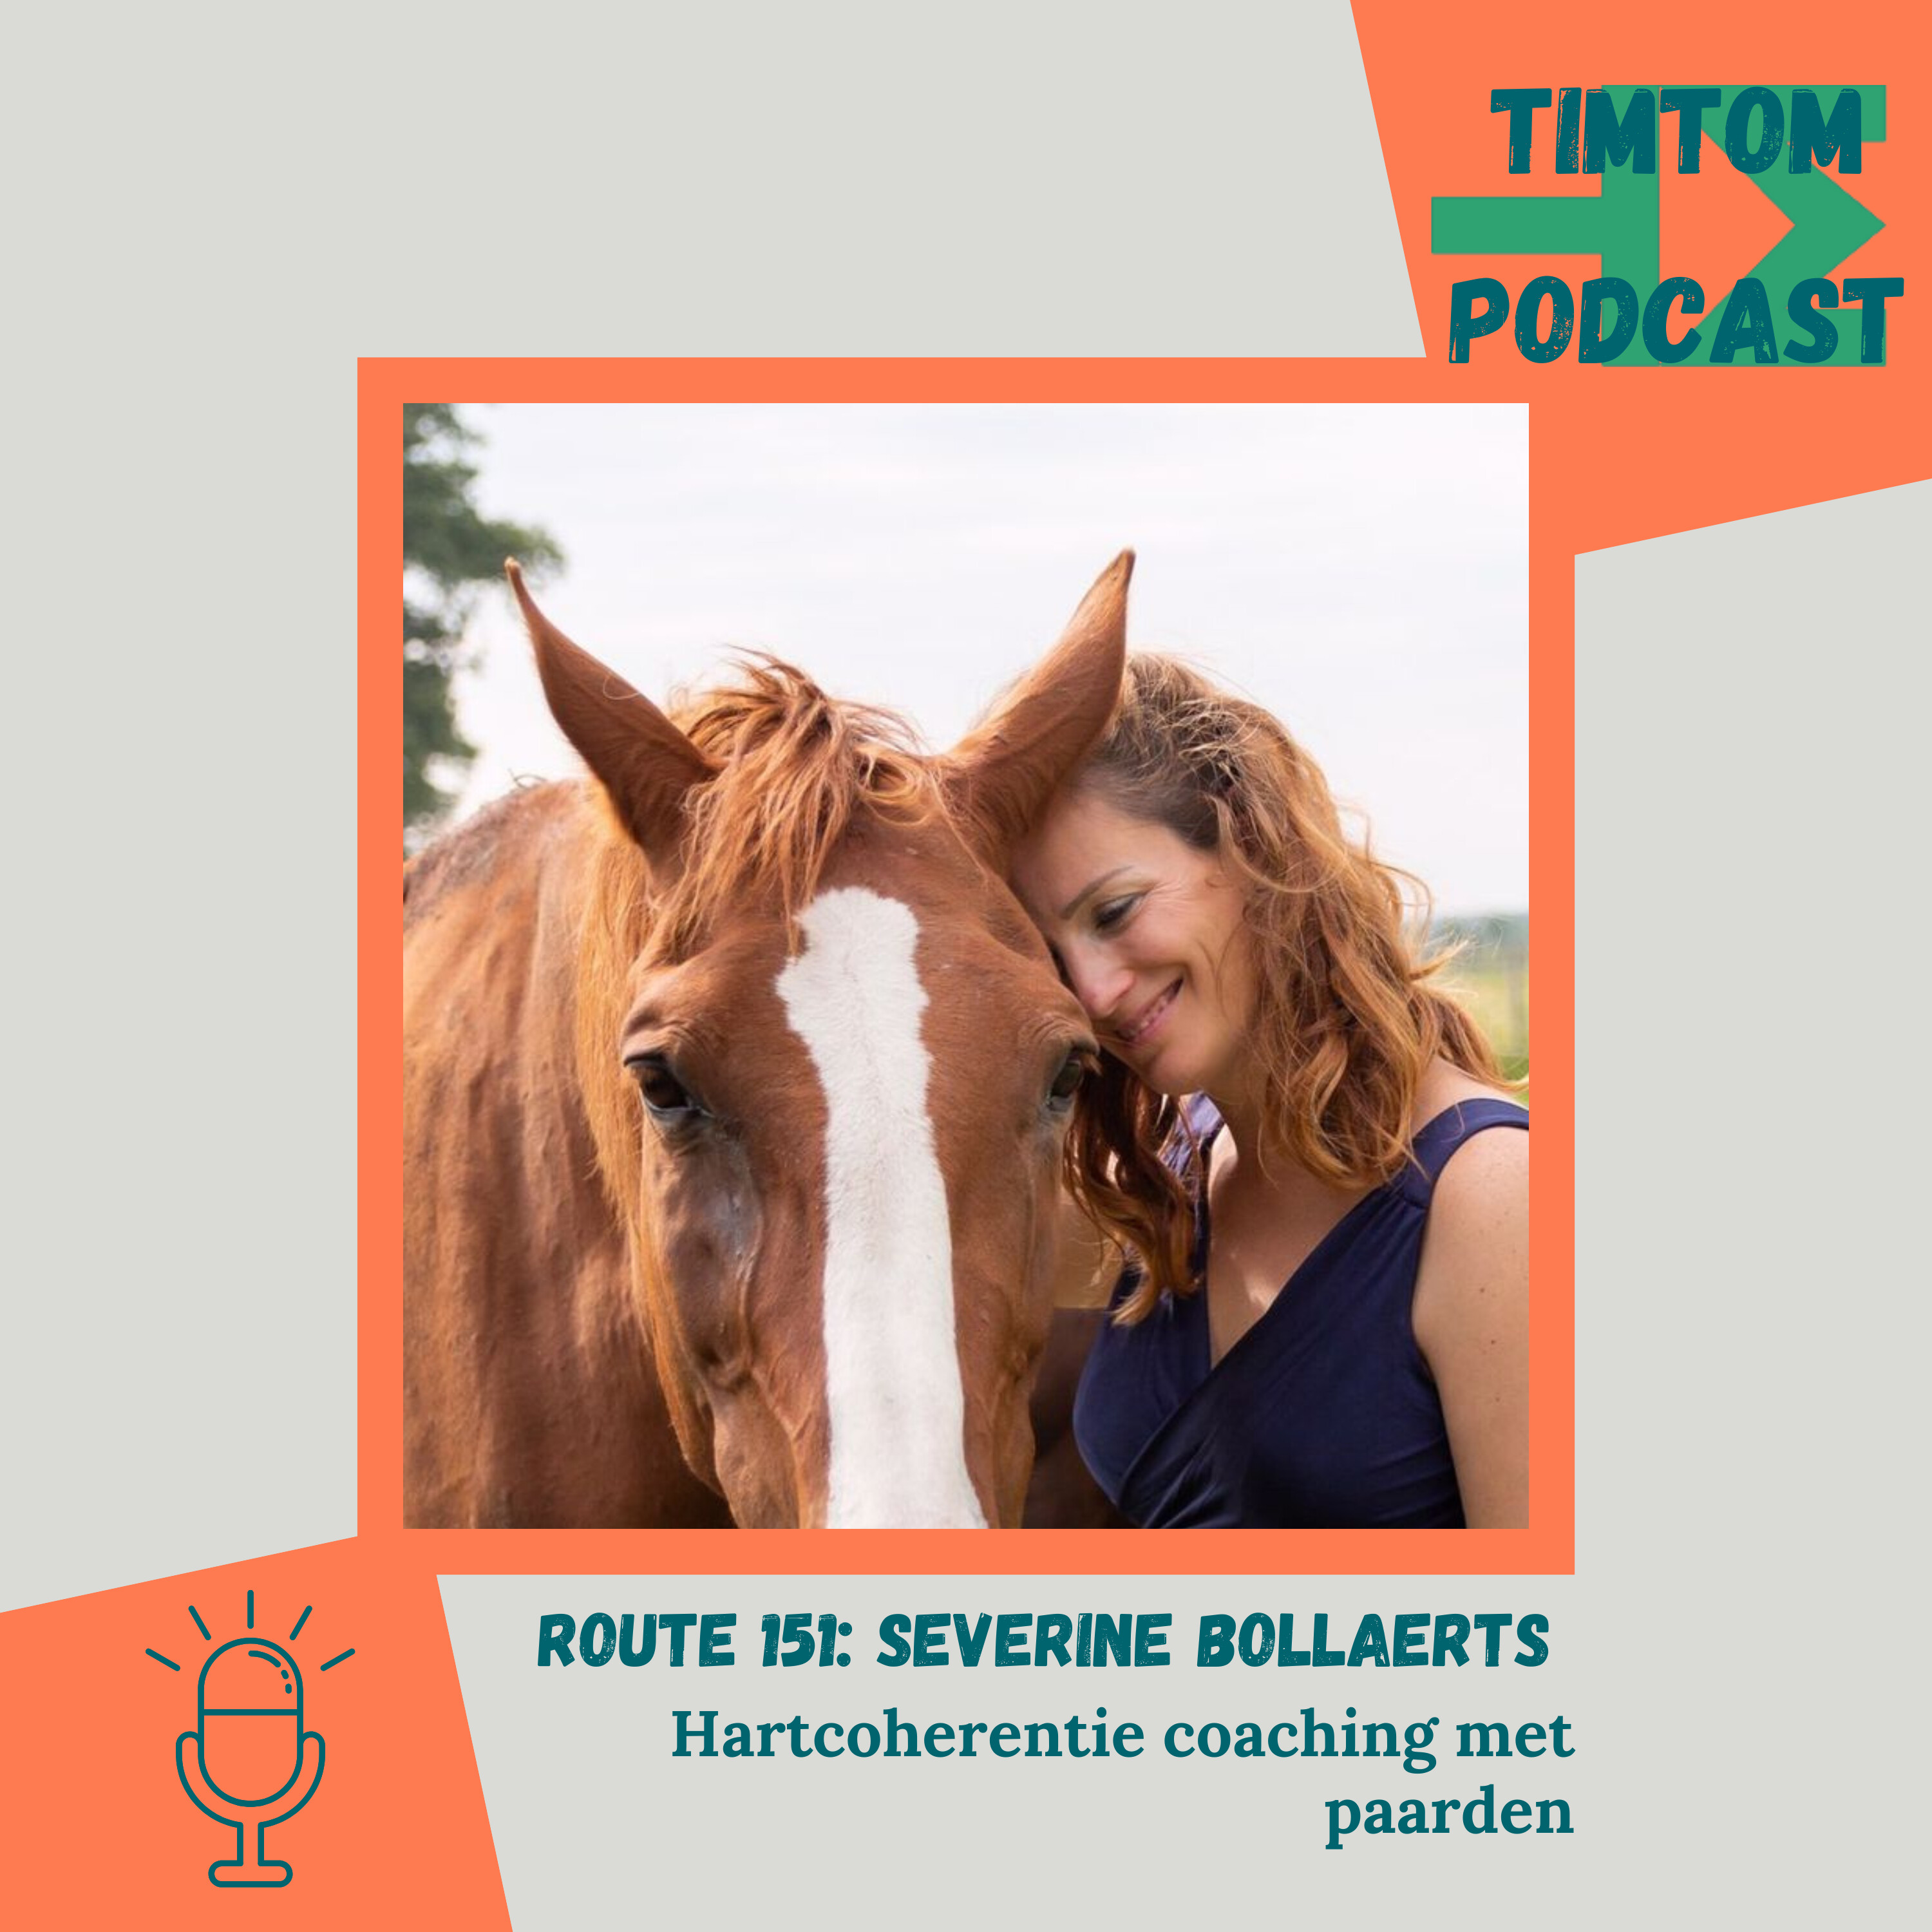 Hartcoherentie coaching met paarden – Route 151 met Severine Bollaerts